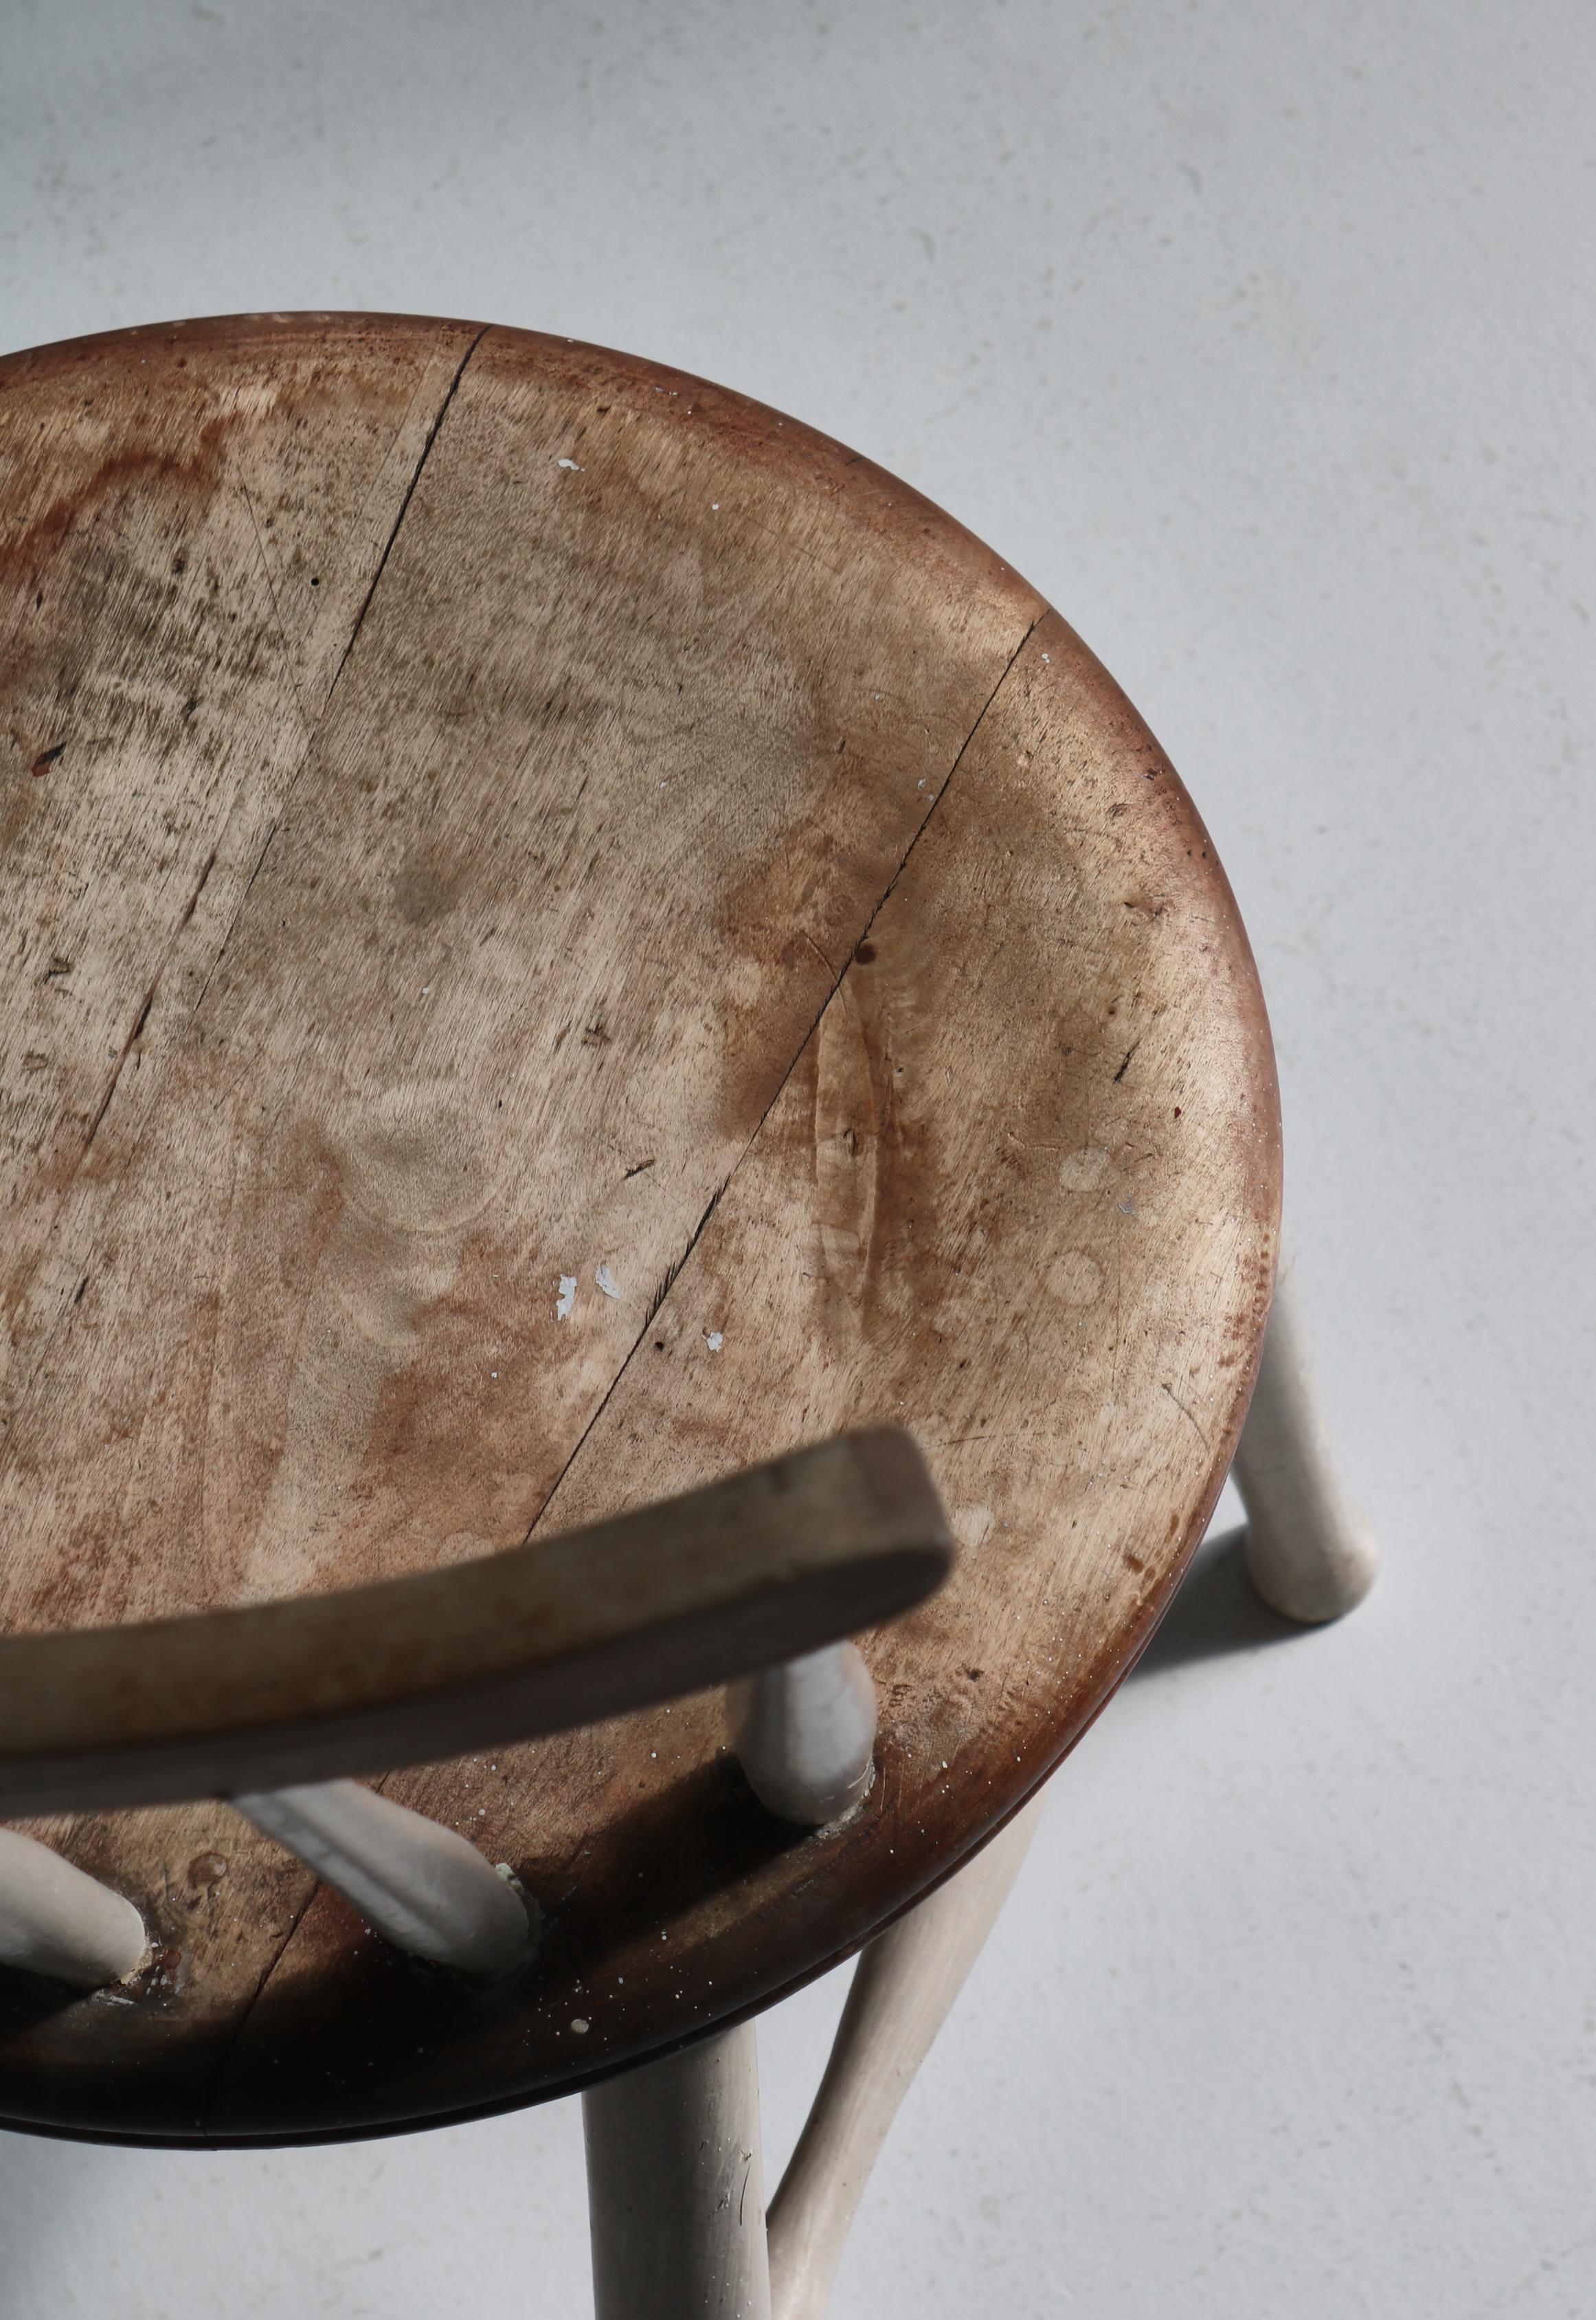 Sehr charmant Paar Wabi-Sabi-Stil Spindel zurück Seite Stühle mit Drumstick Beine. Hergestellt im frühen 20. Jahrhundert von einem dänischen Tischler. Traditioneller Stuhl aus massiver Buche und weißer Farbe. Schöne Abnutzung und Patina.